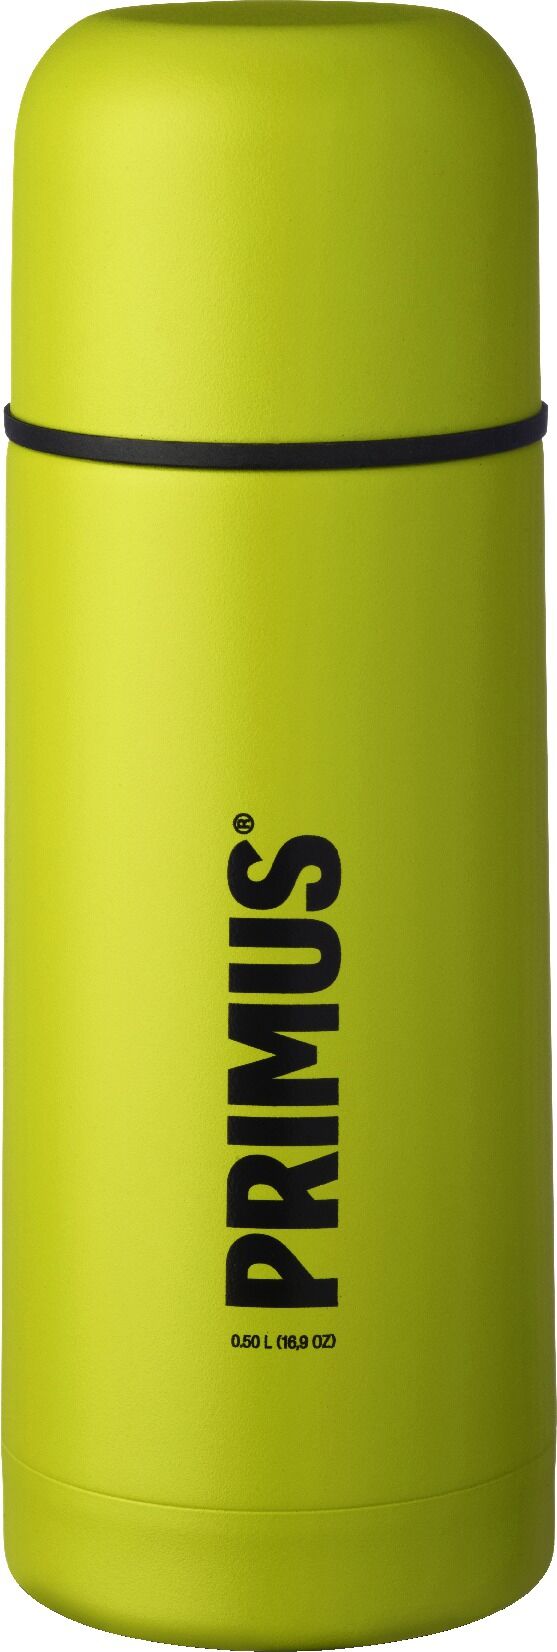 Primus Vacuum Bottle 0.5L termos Yellow 2018